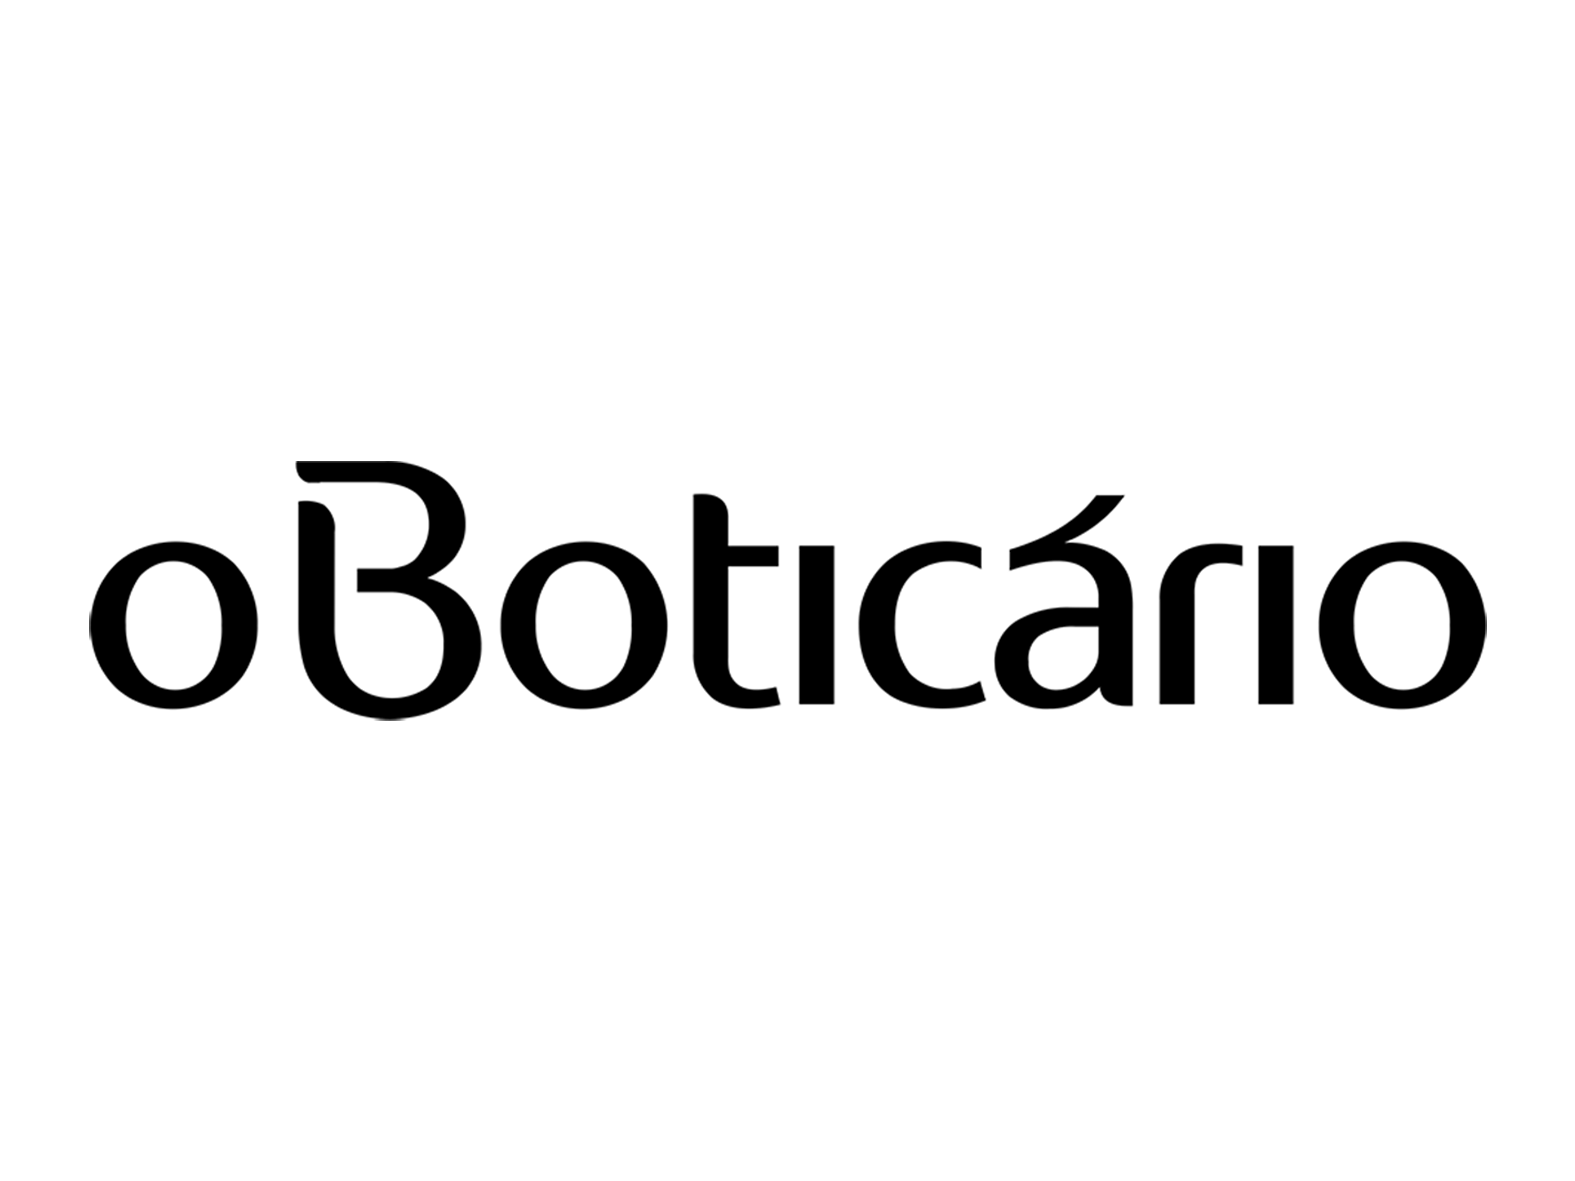 Logo Boticário